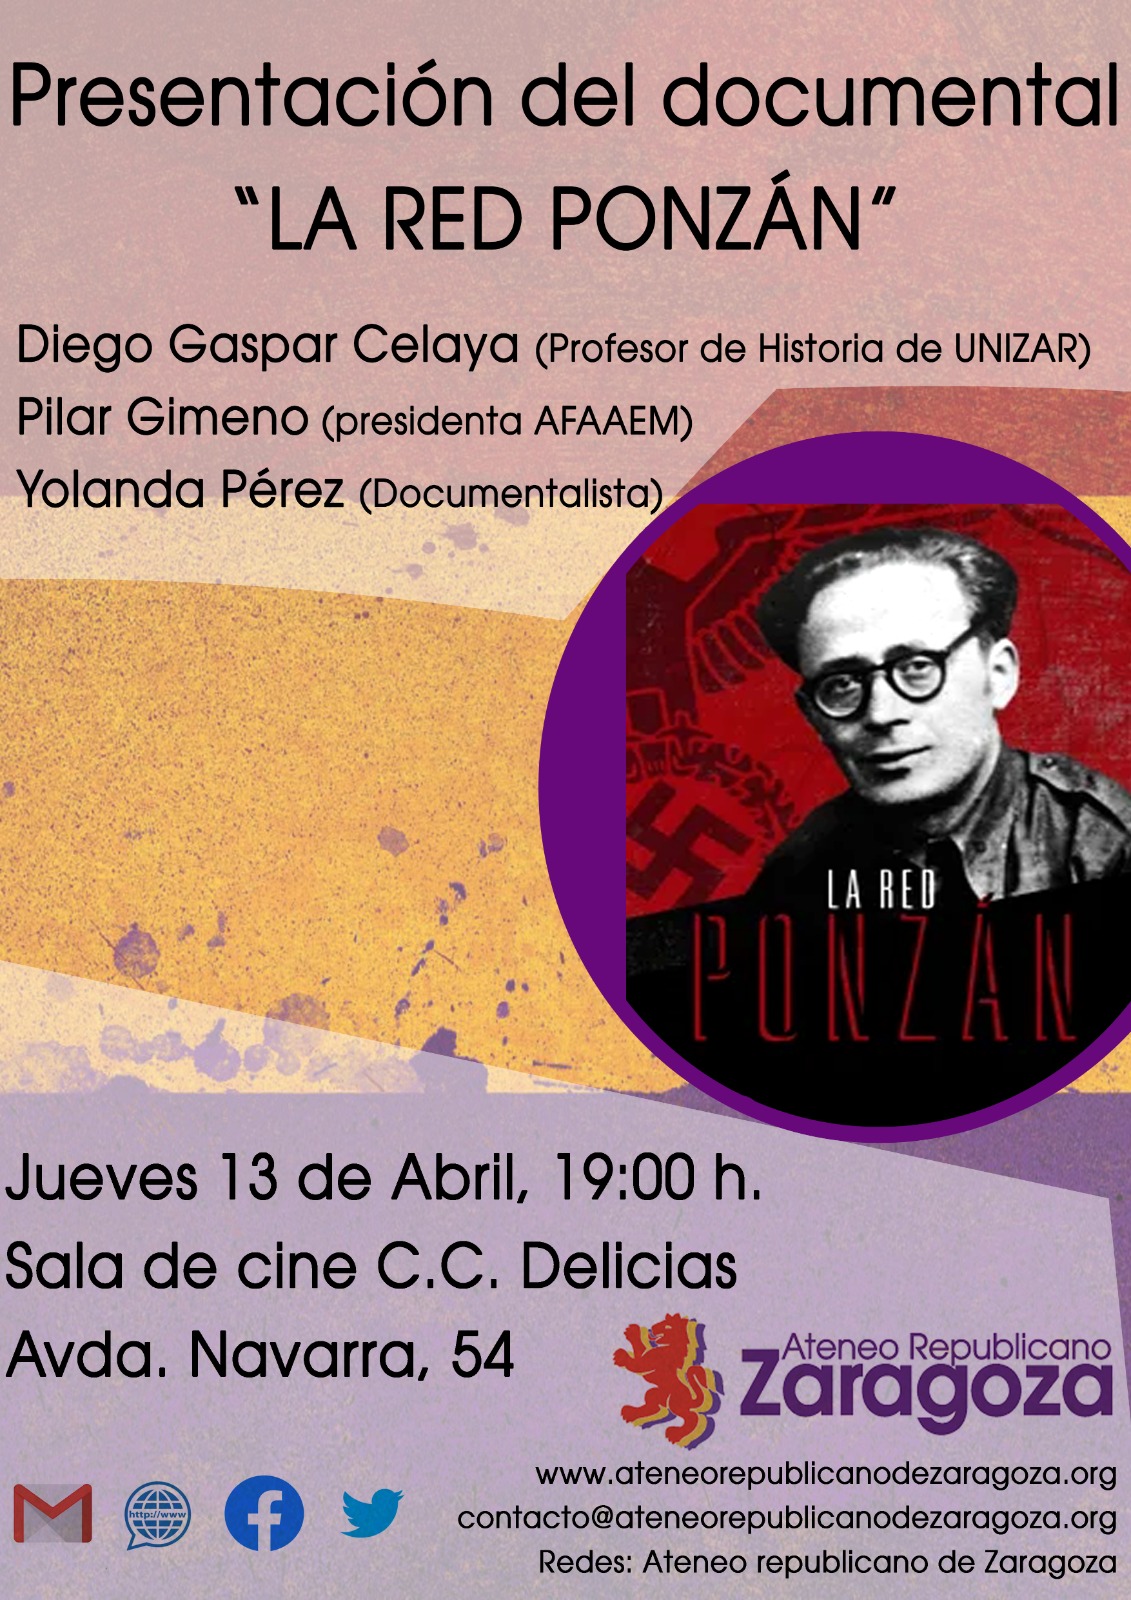 Documental "La Red Ponzán" @ Centro Cívico Delicias. Avda de Navarra 54. 50010 Zaragoza